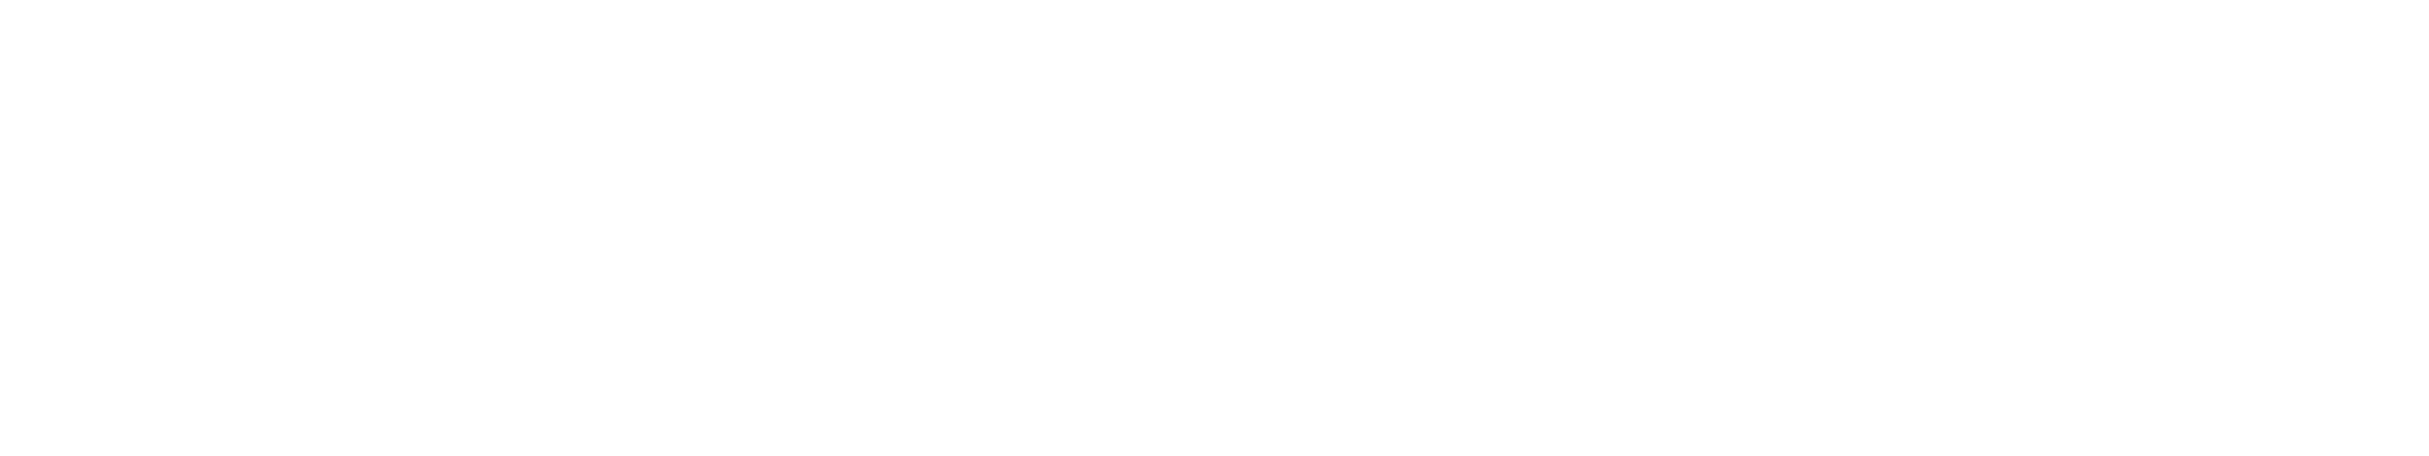 Lakehouse logo